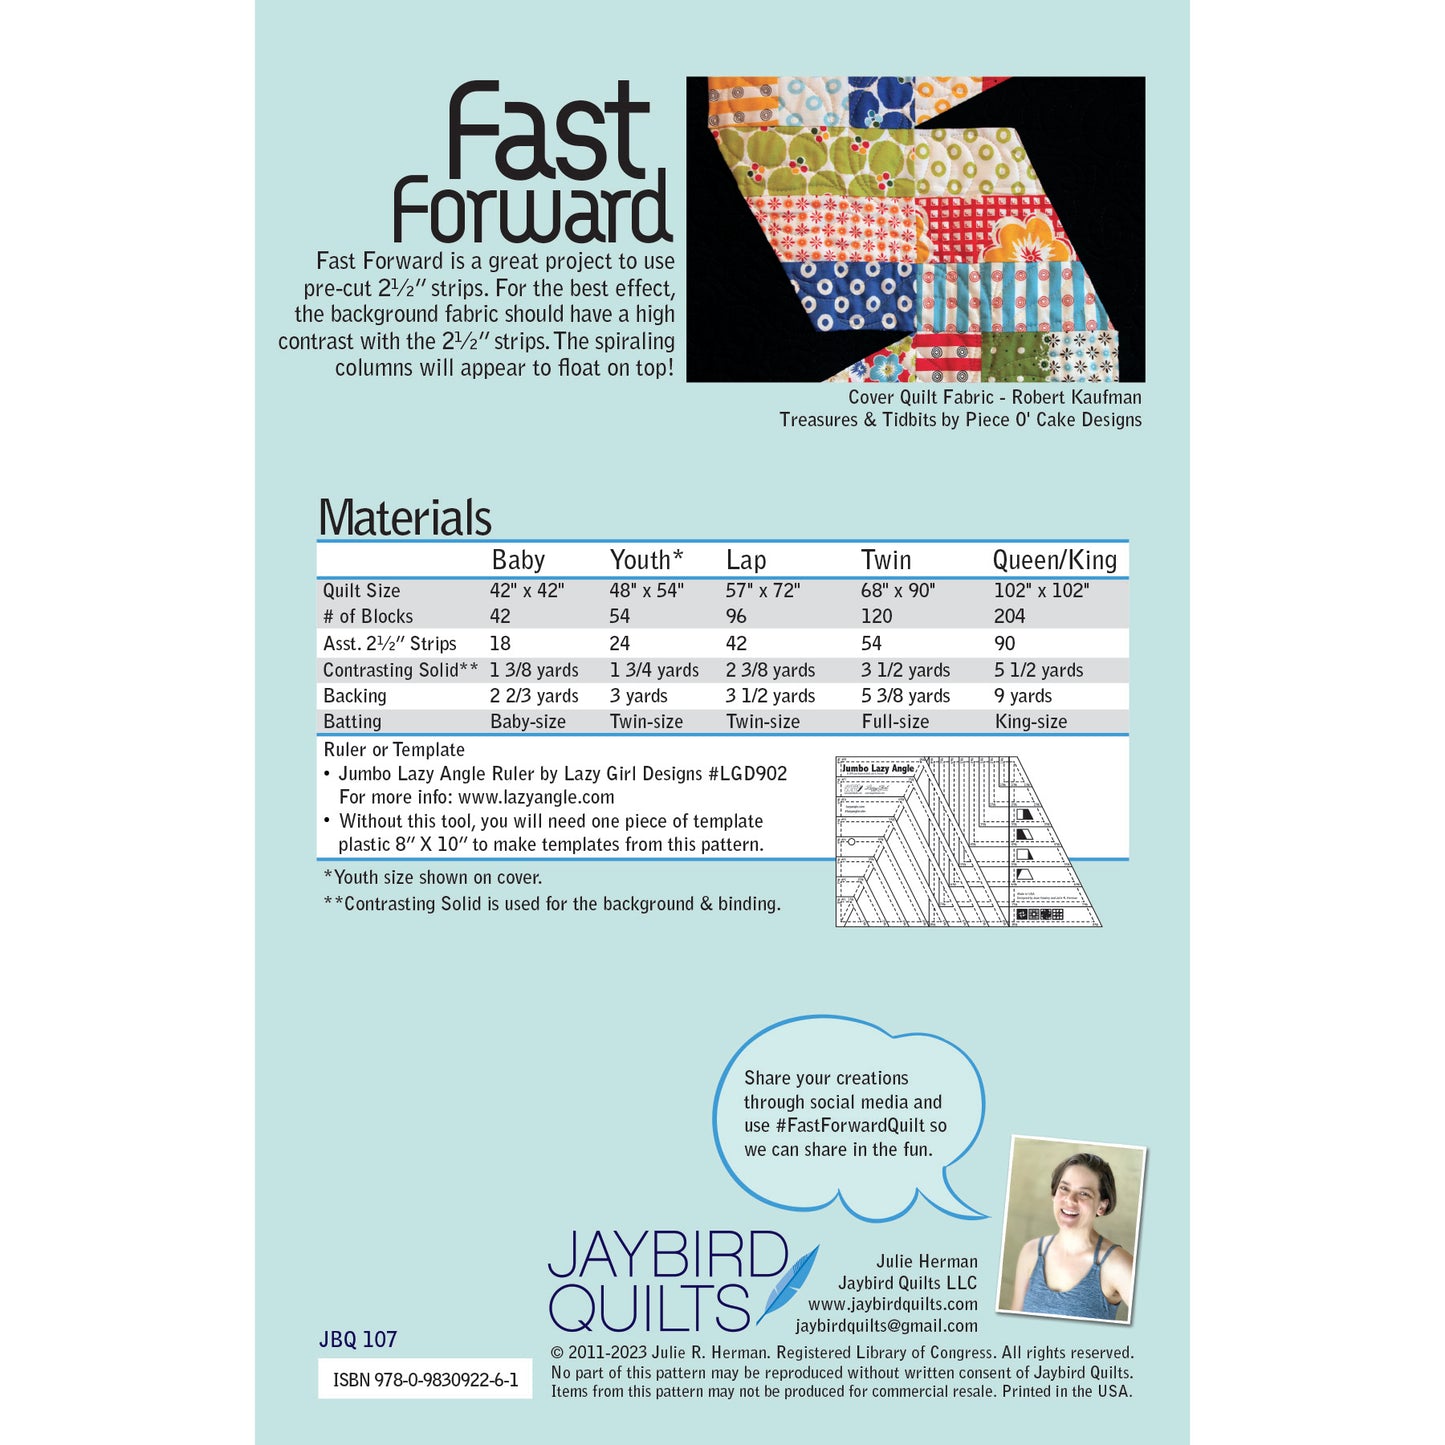 Fast Forward PDF Pattern